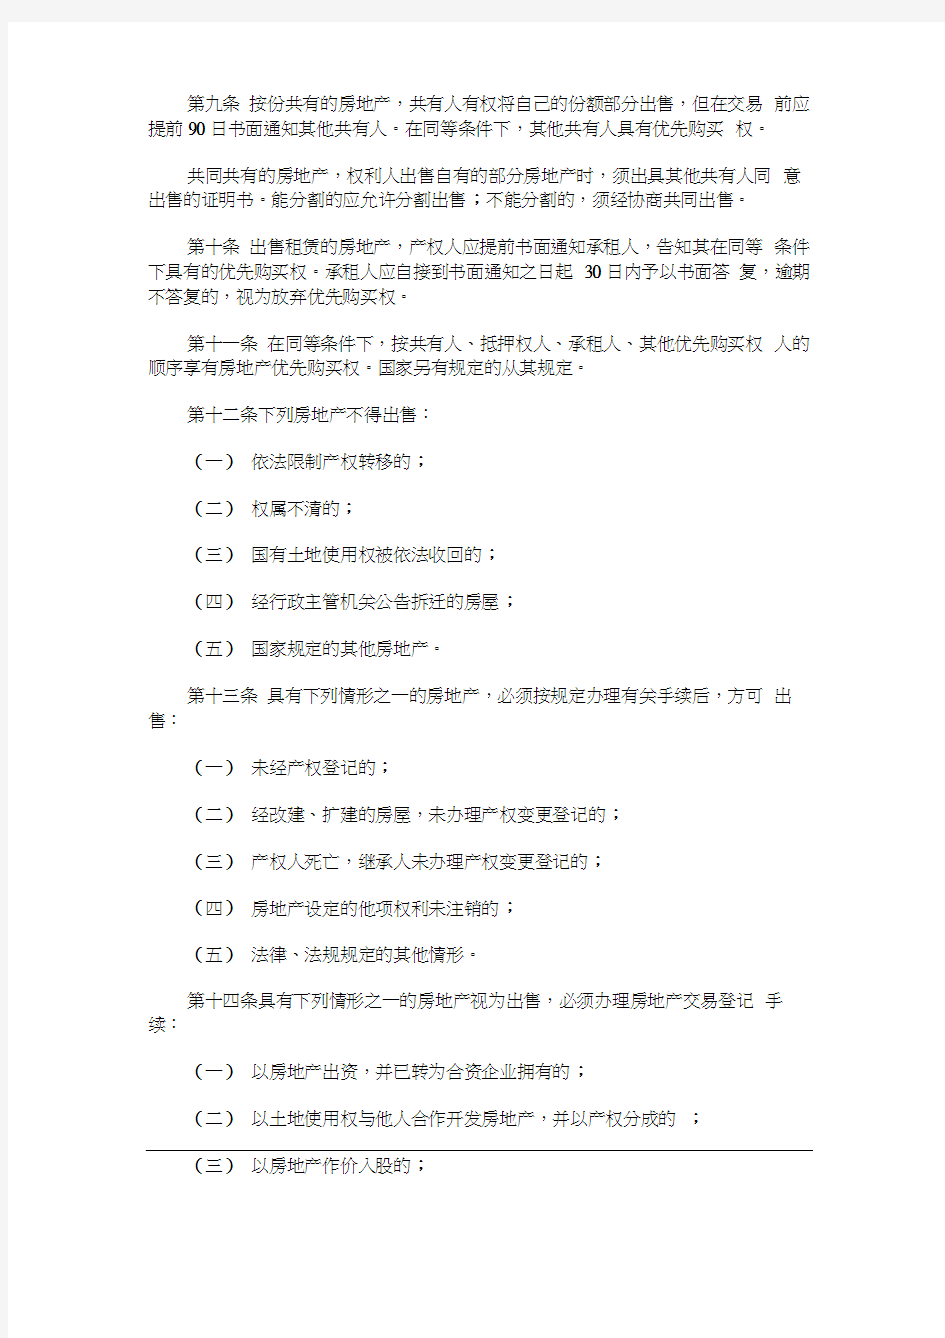 广州市房地产交易管理办法探讨与研究(20210109072556)